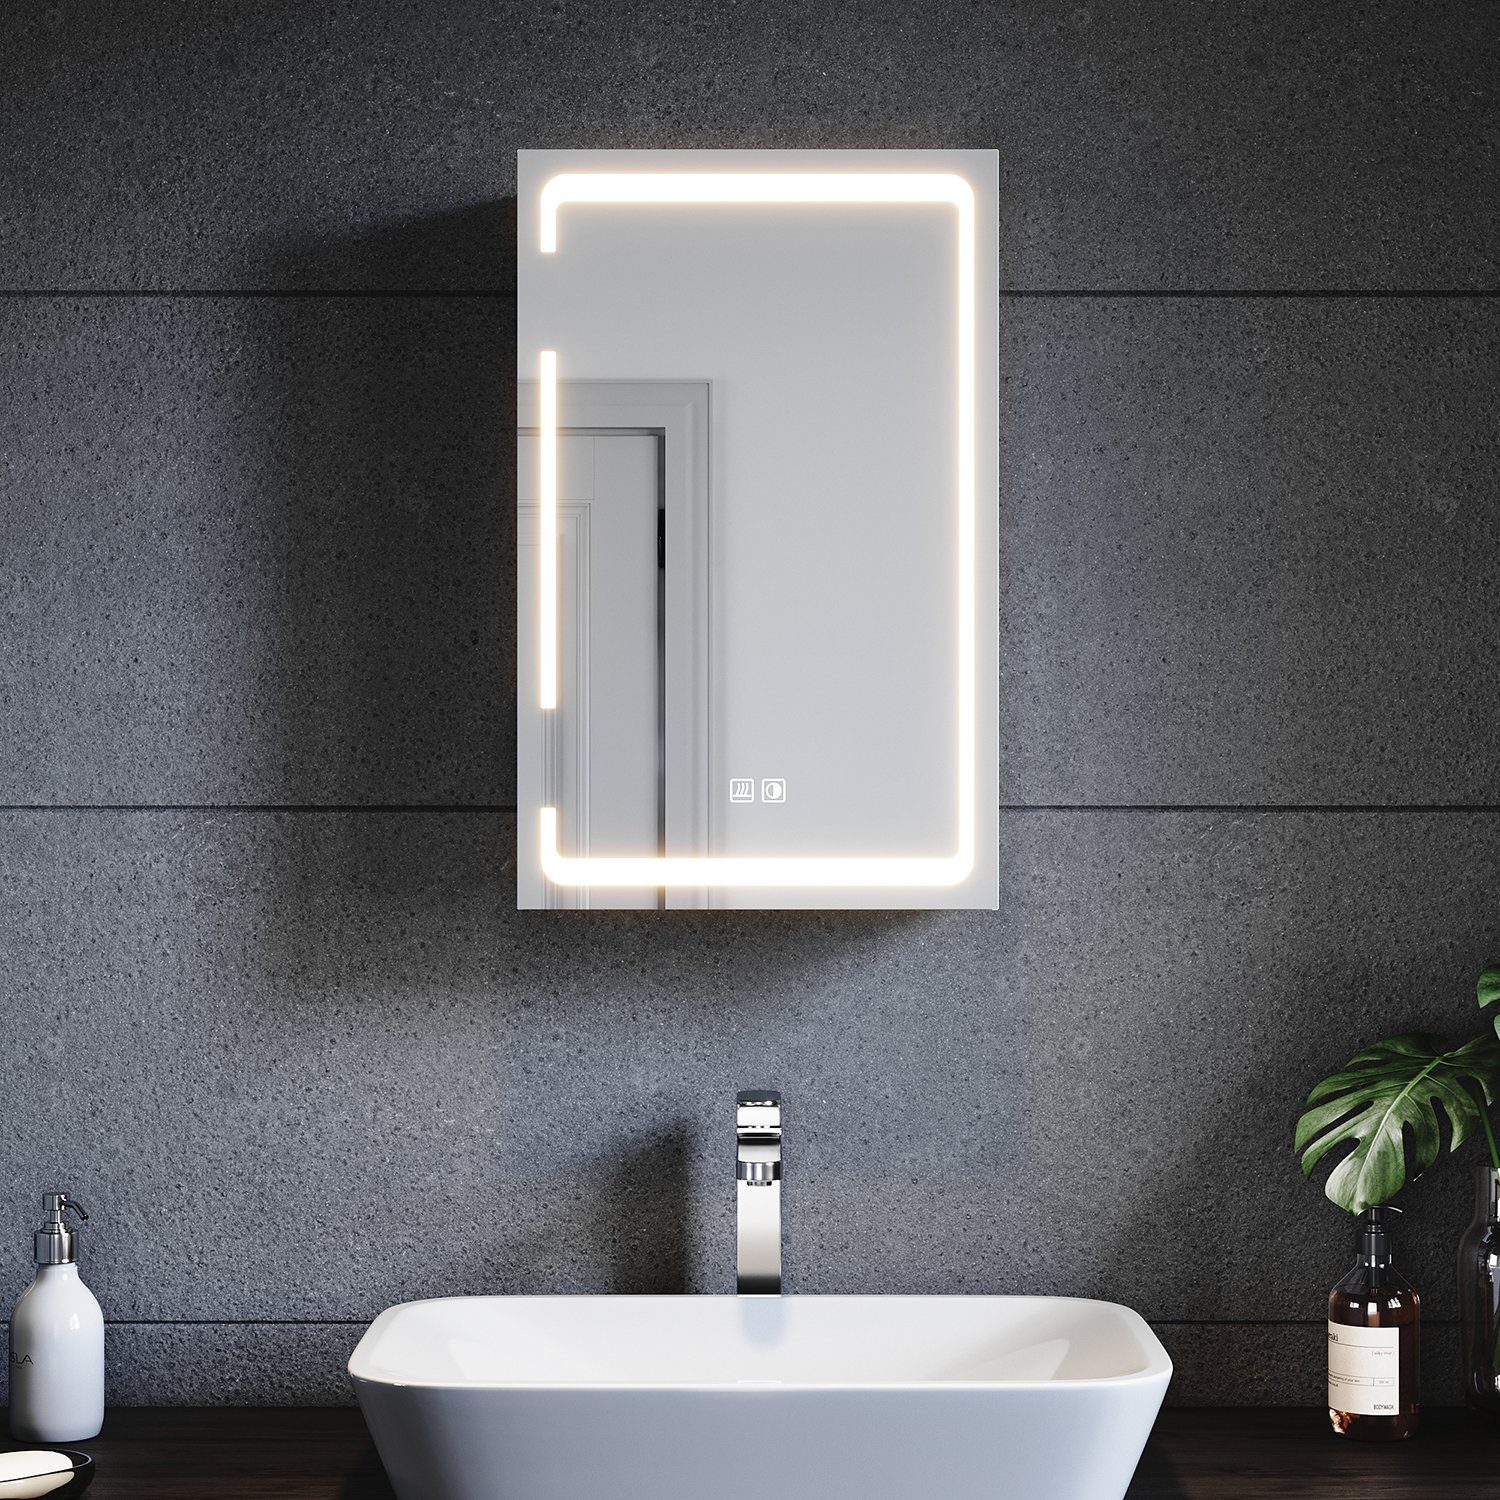 SONNI Badezimmerspiegelschrank Eintüriger dreifarbig beleuchteter Badspiegelschrank,380x600x140mm